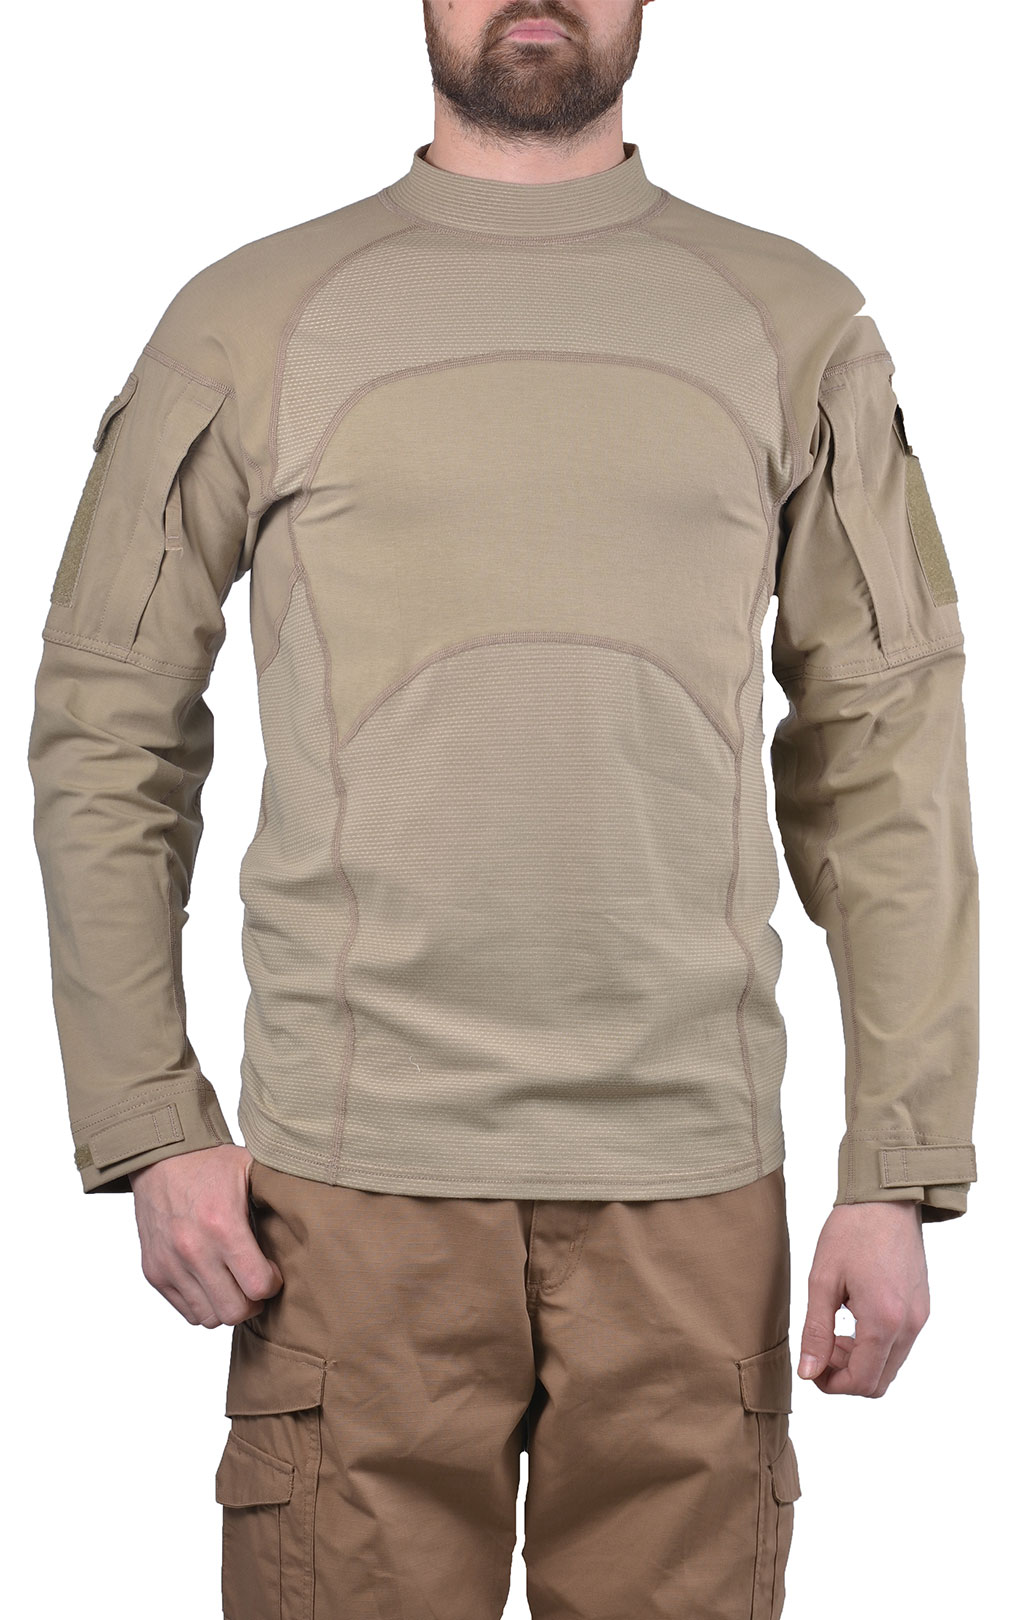 Рубашка Combat Shirt khaki США